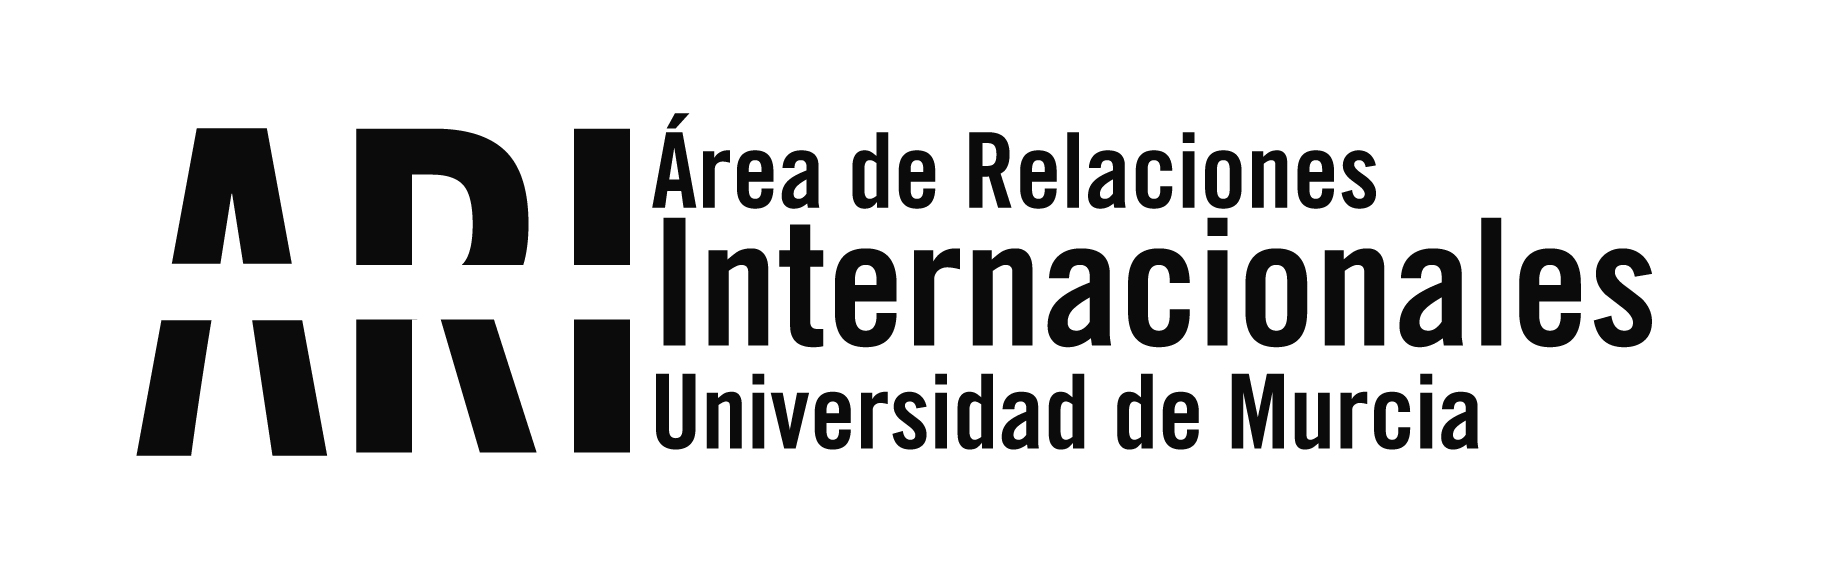 Logo Area de Relaciones Internacionales